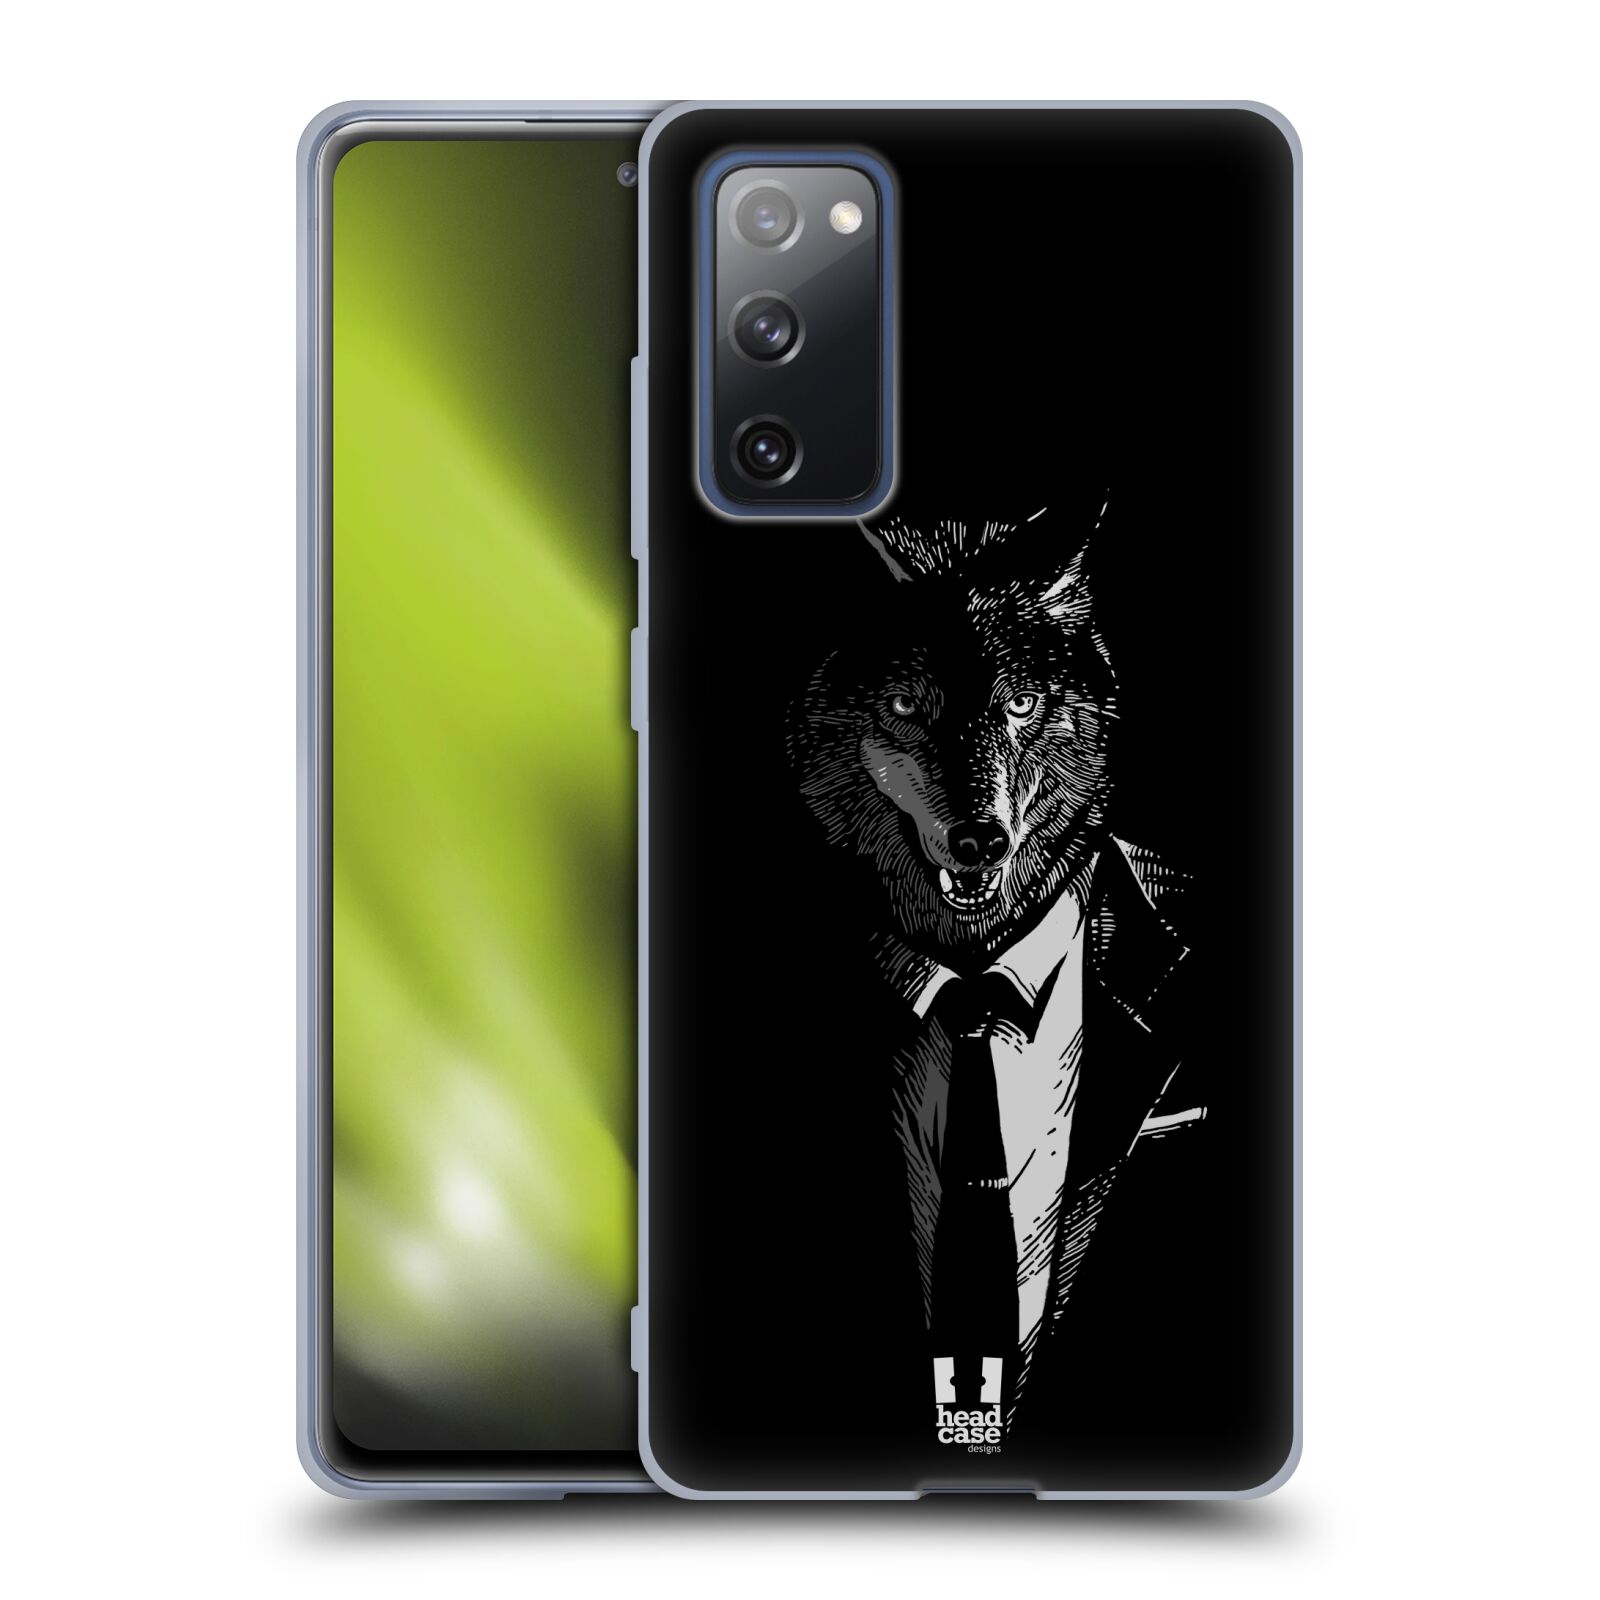 Plastový obal HEAD CASE na mobil Samsung Galaxy S20 FE / S20 FE 5G vzor Zvíře v obleku vlk